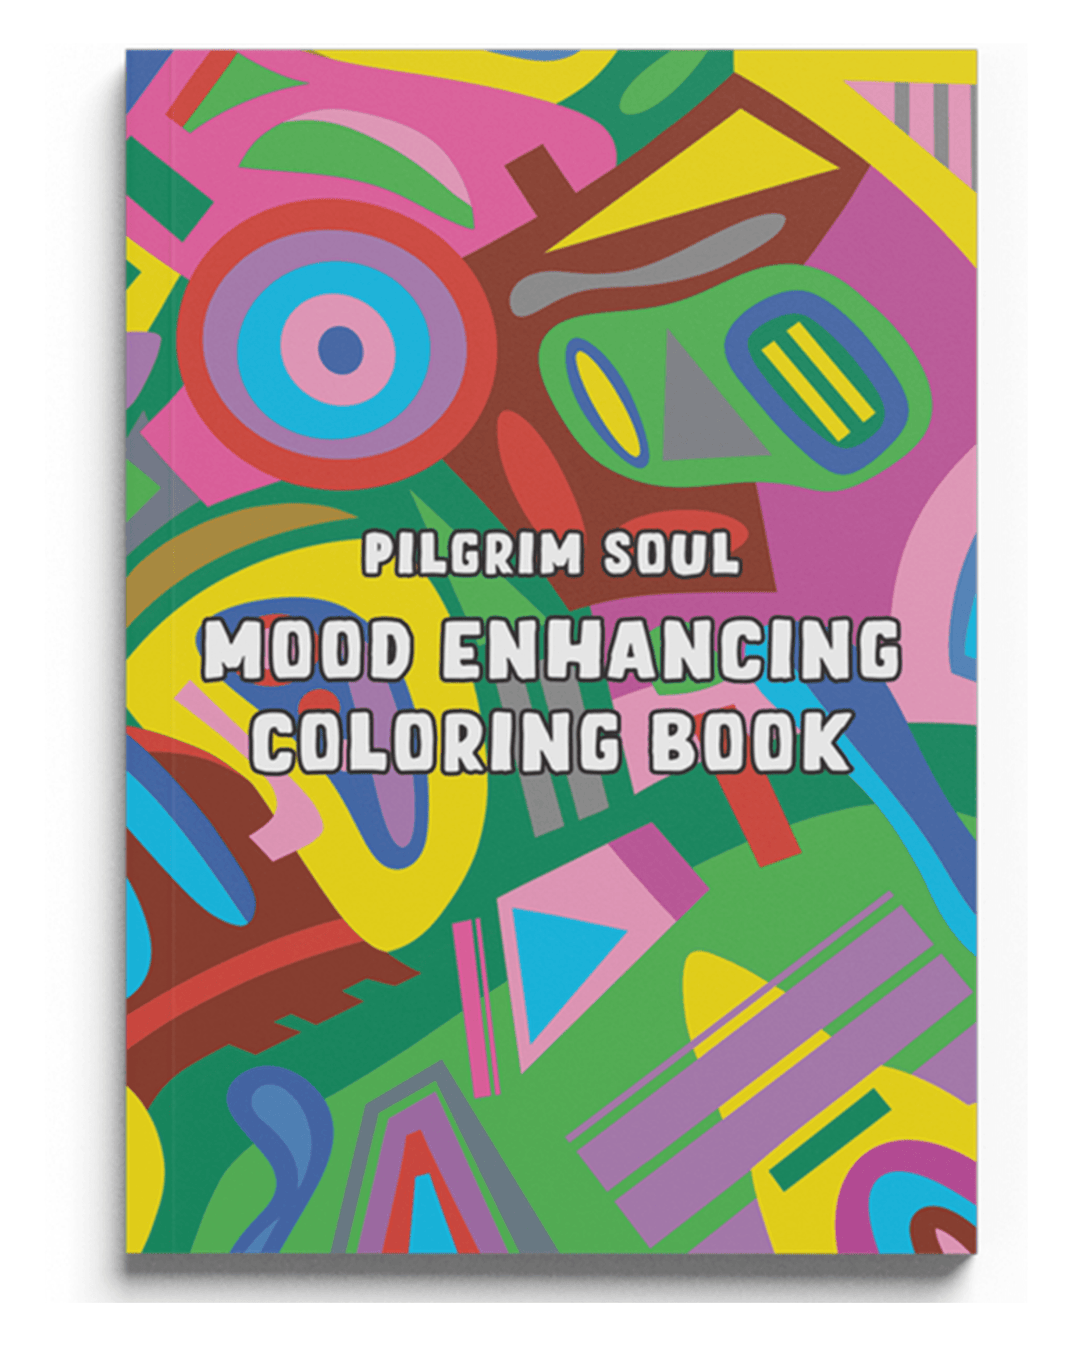 Mood Enhancing Book + Pencils: Vol II